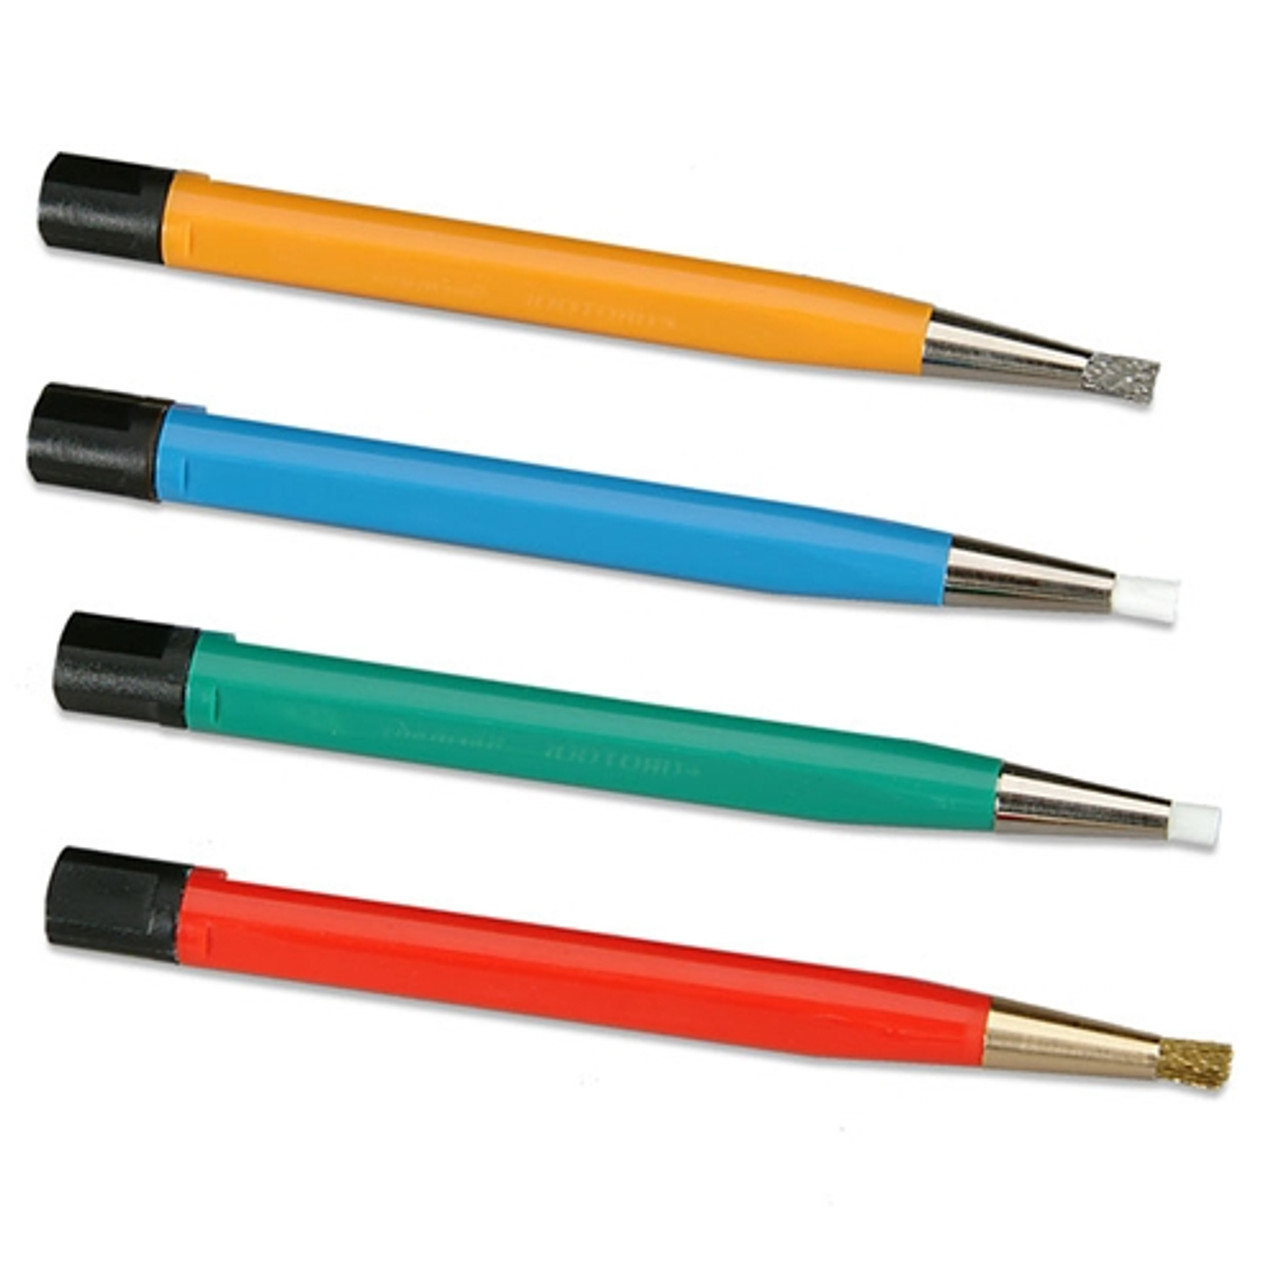 Scratch Brush Pens - Brass Refills only (Pkg. of 6)